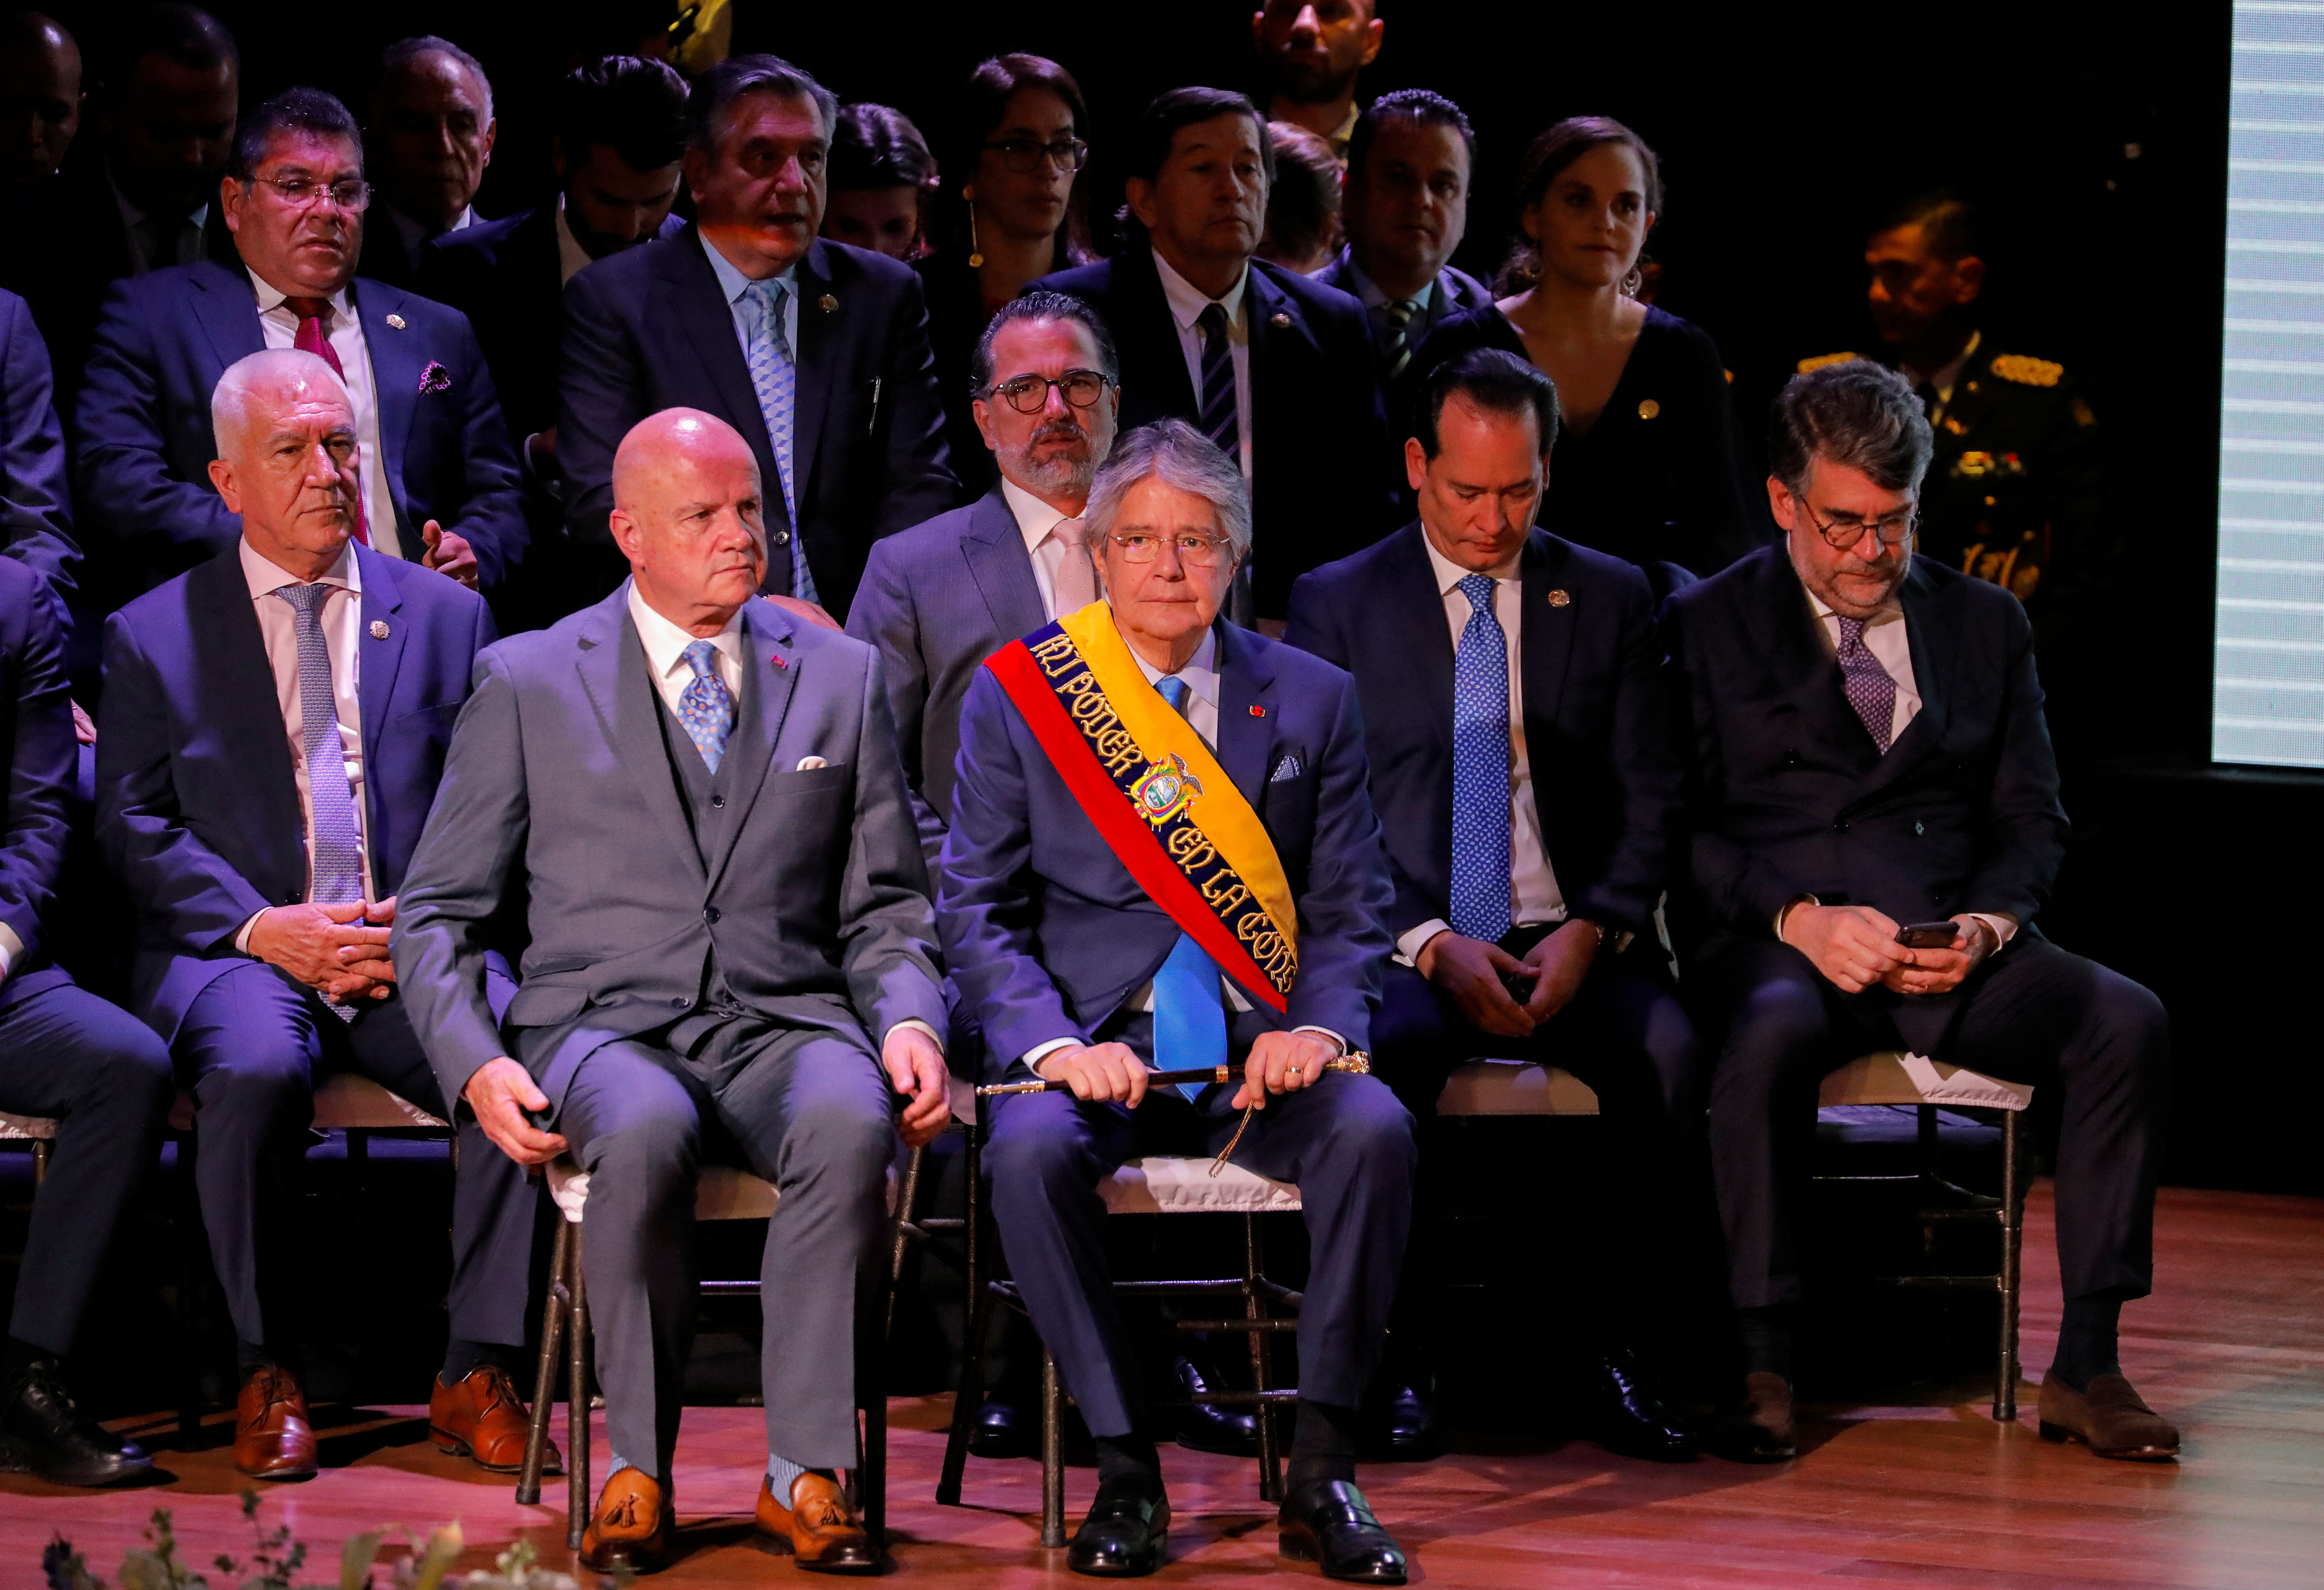 El vicepresidente y los ministros acompañaron a Guillermo Lasso en su discurso. (REUTERS/Karen Toro)